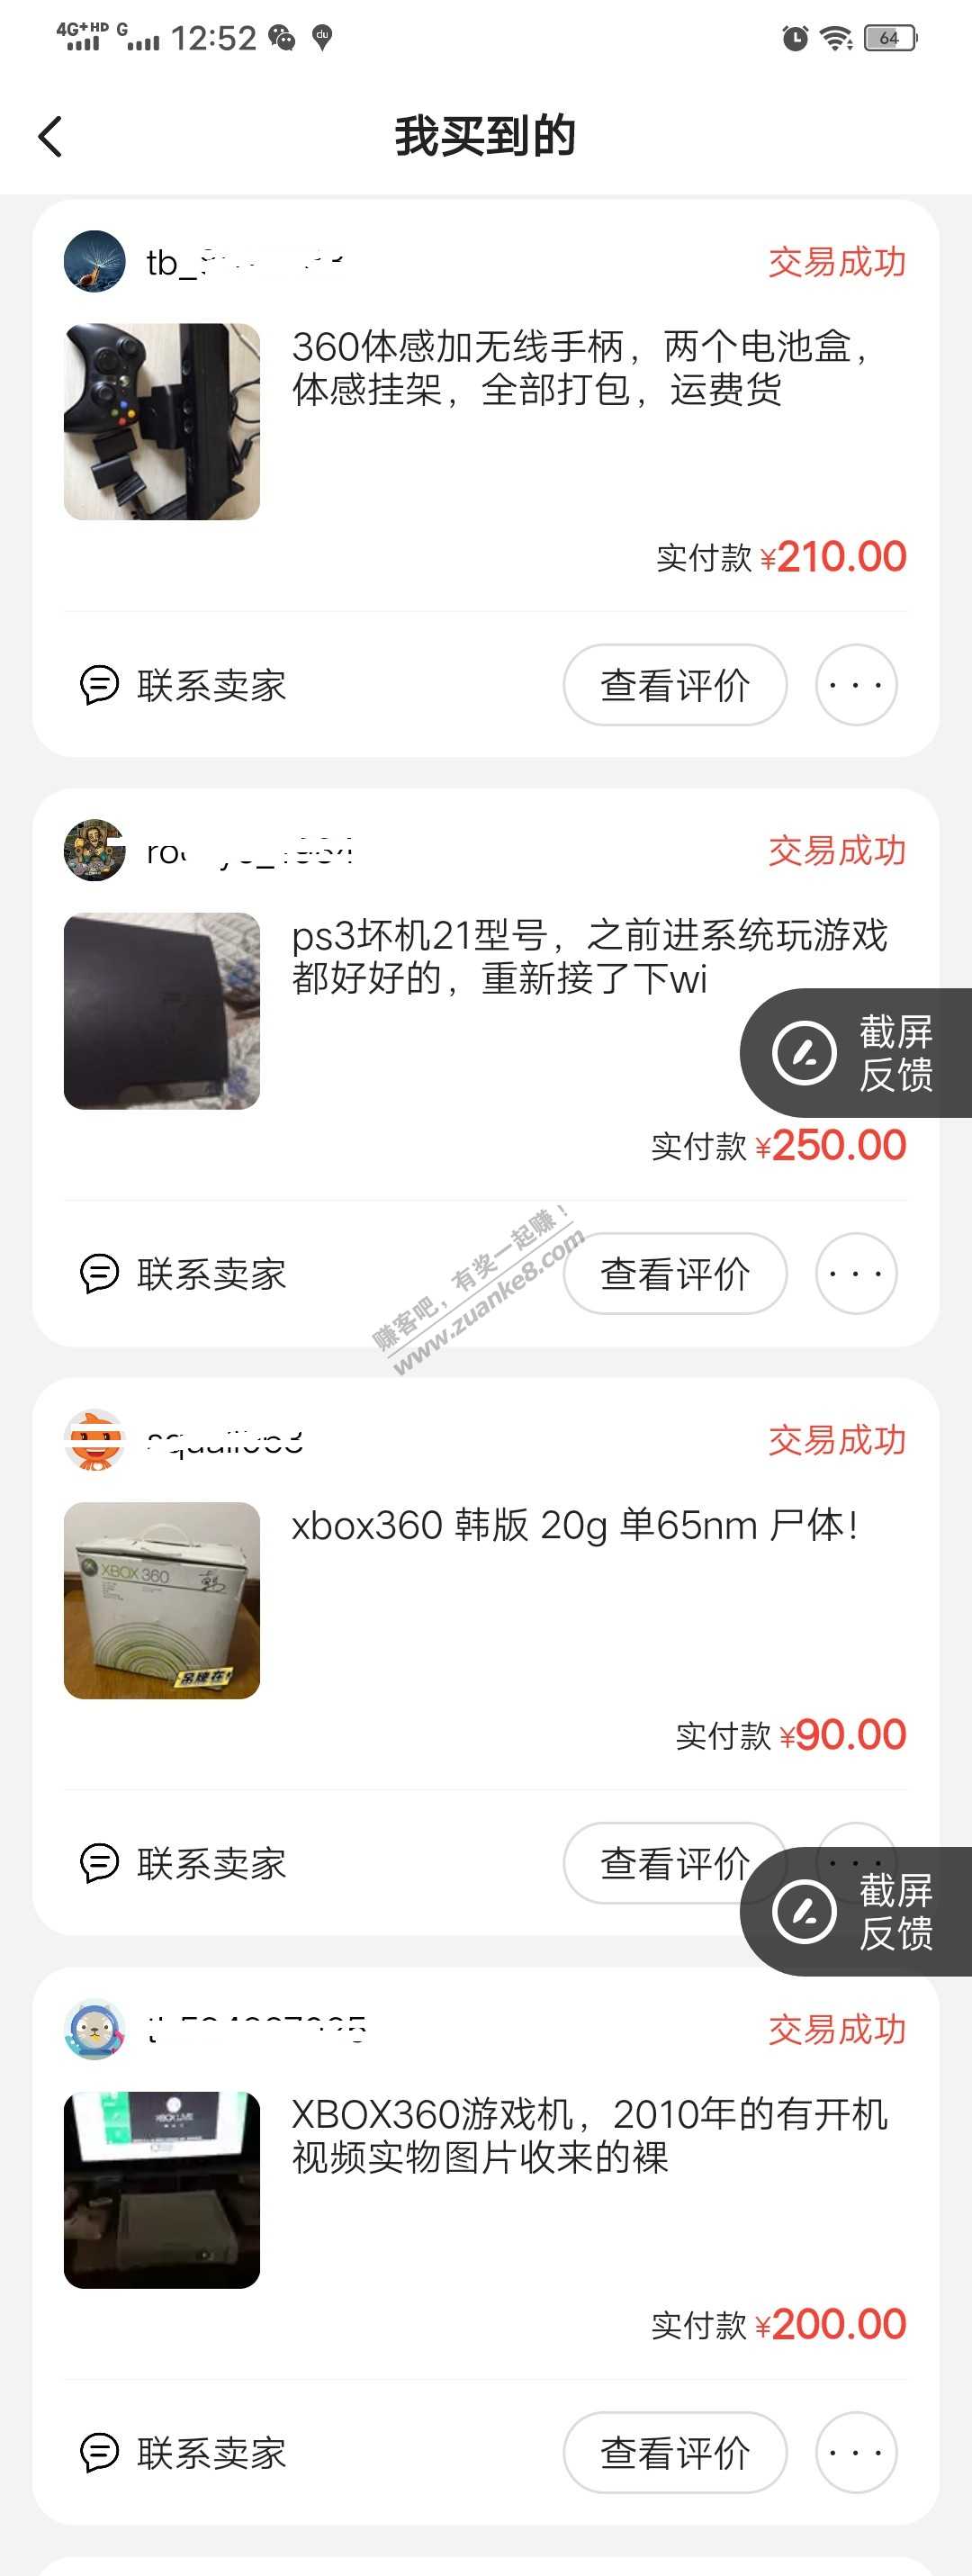 体感游戏机之xbox360-惠小助(52huixz.com)